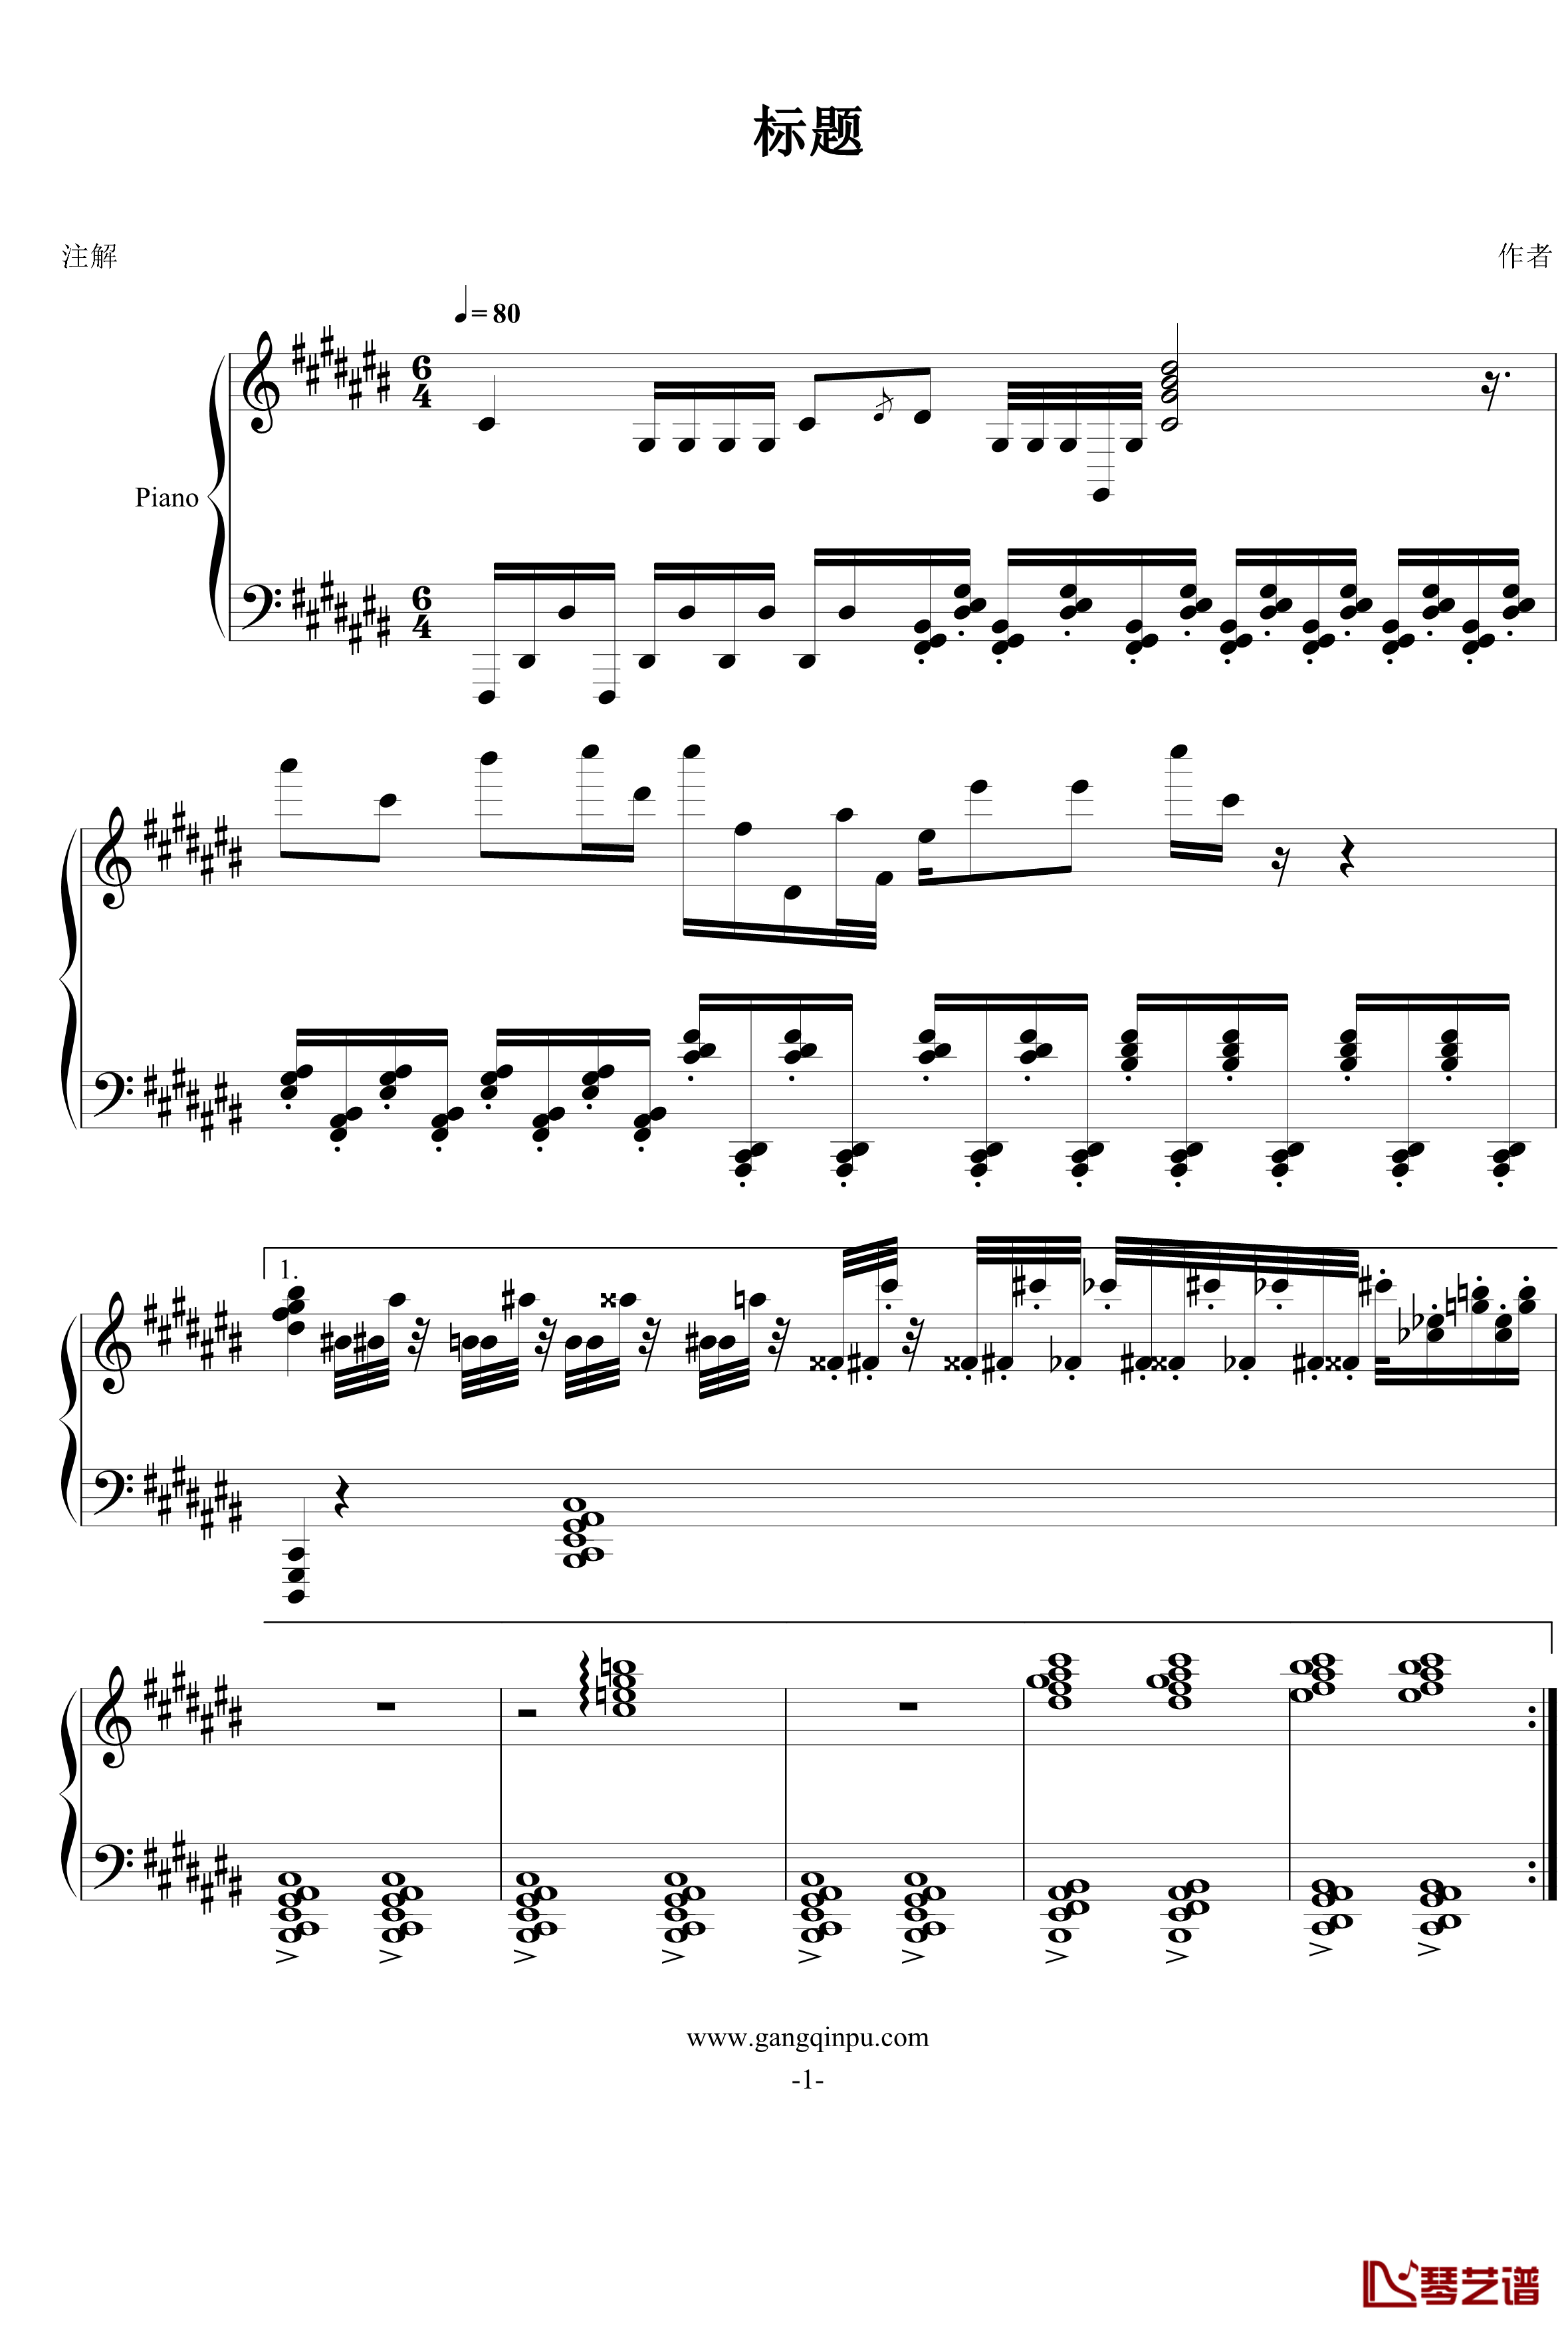 低落的预感钢琴谱-FIRSTONE